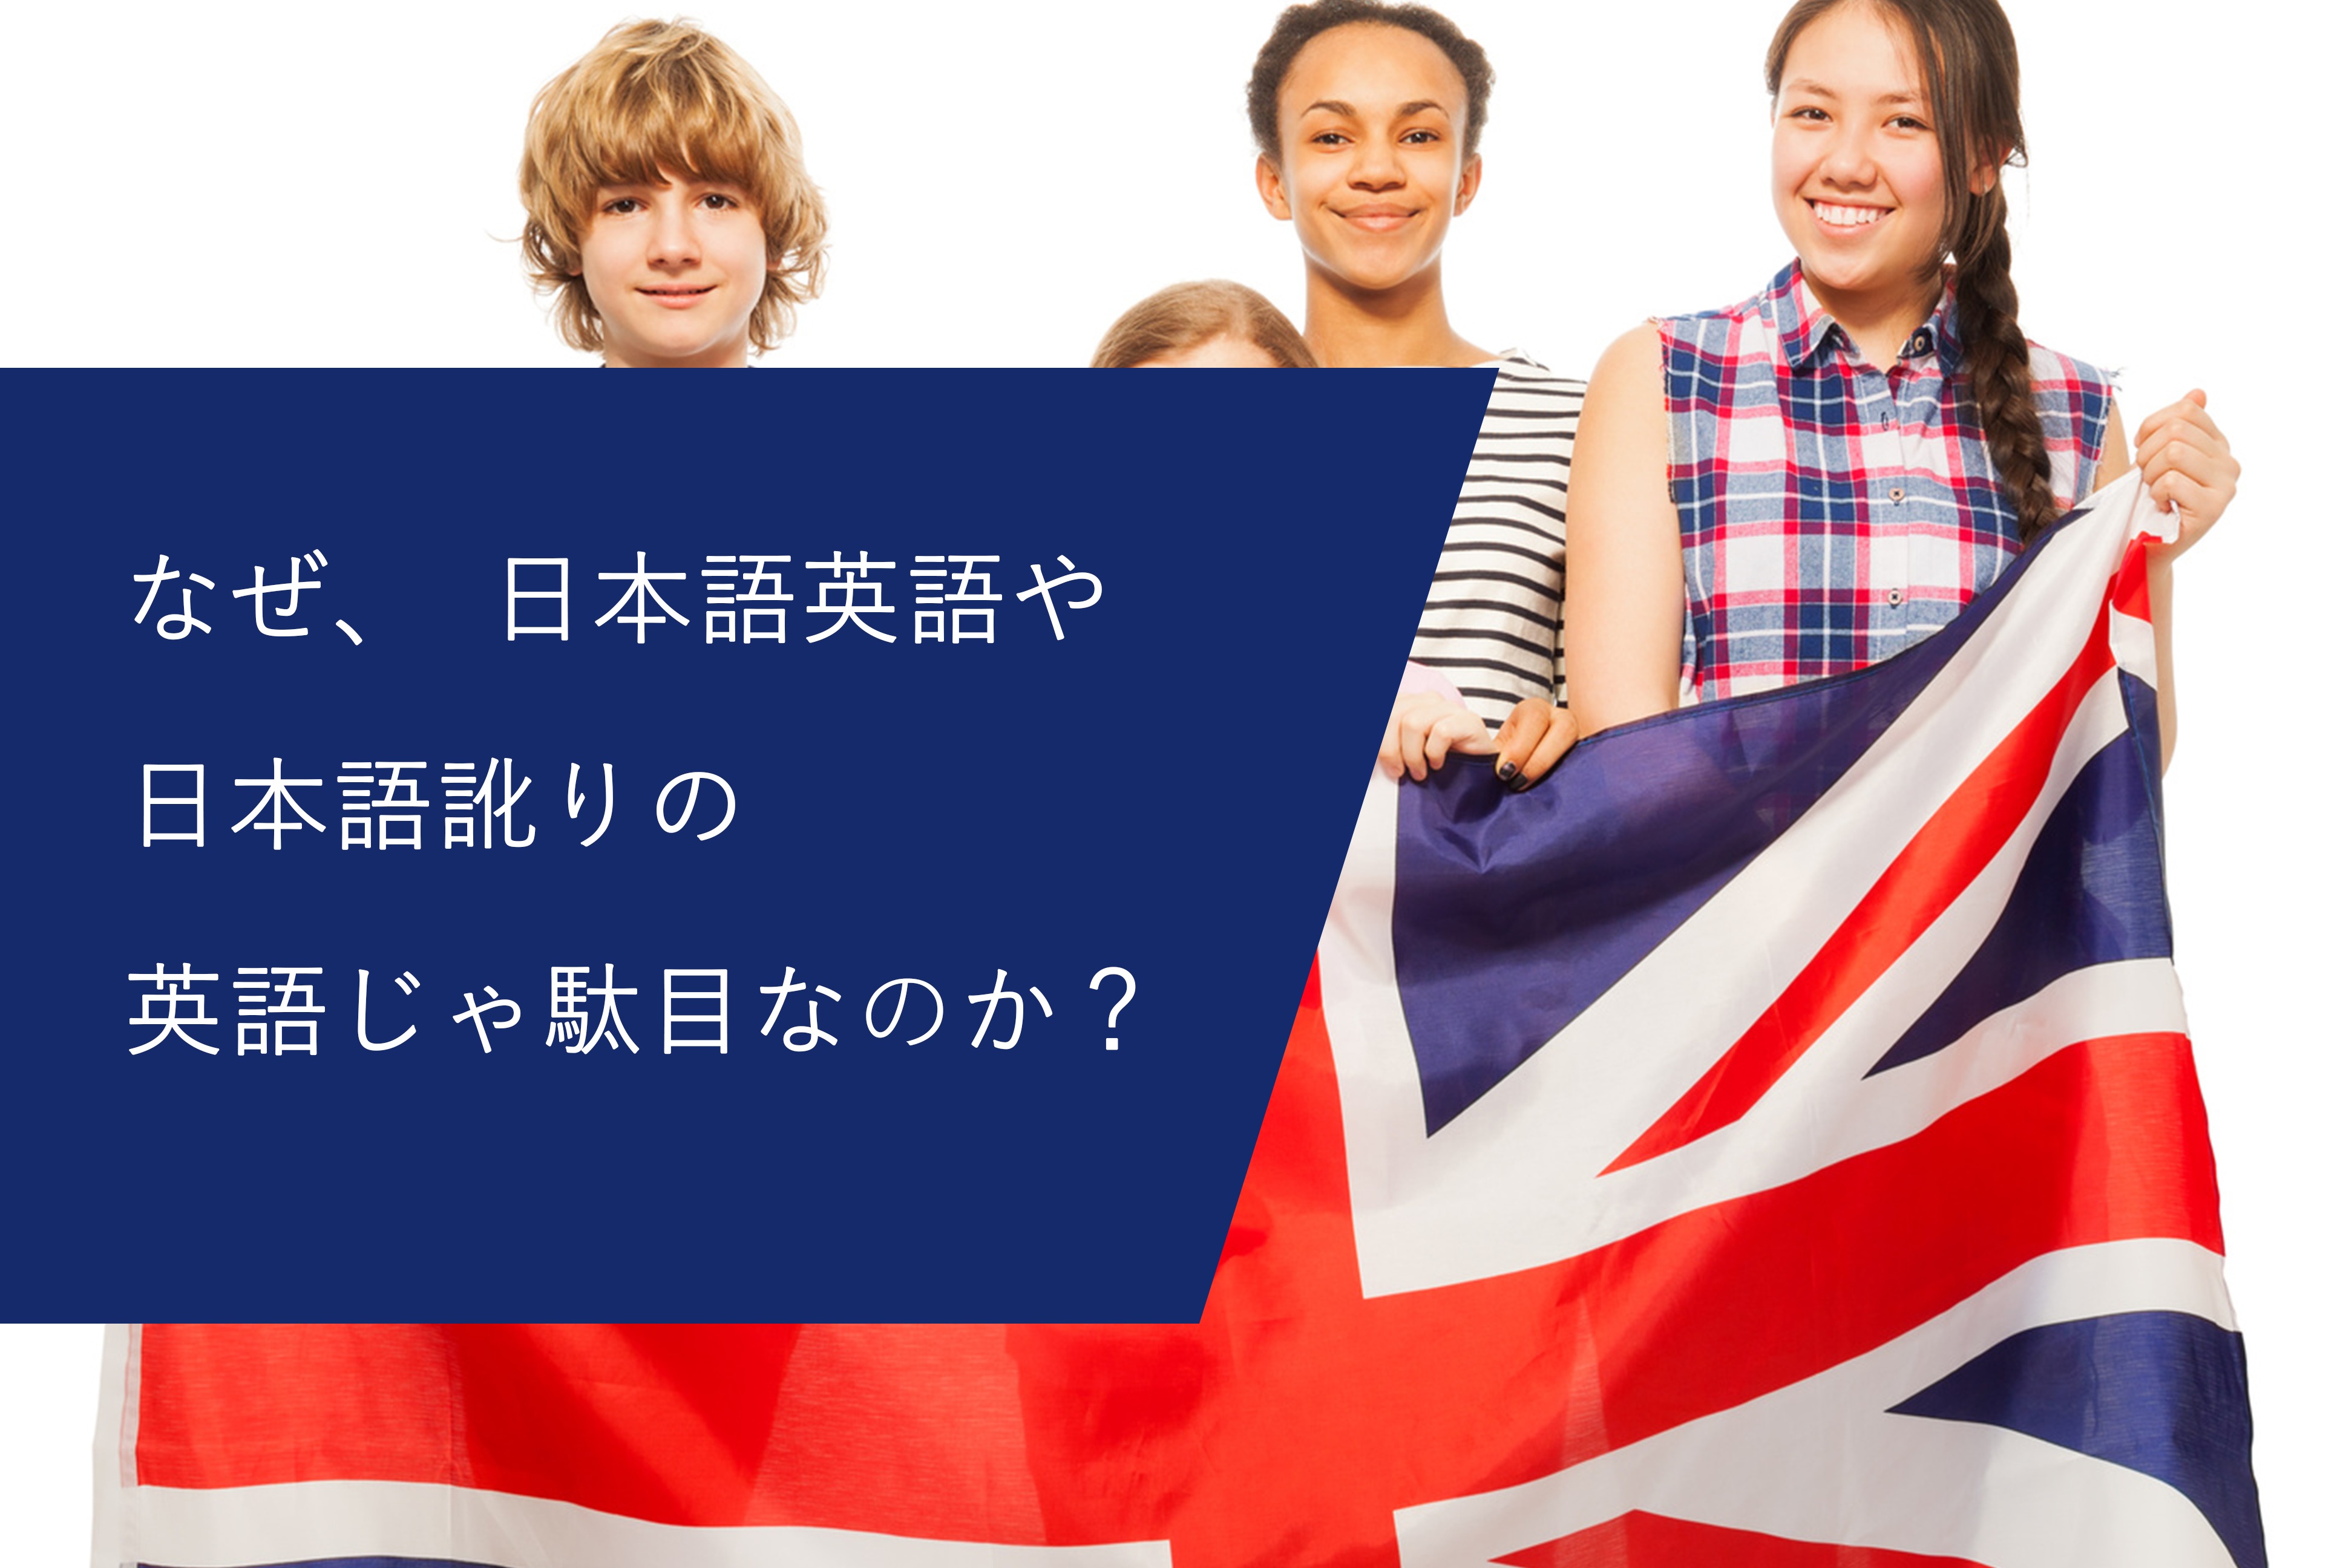 なぜ、日本語英語や日本語訛りの英語じゃ駄目なのか？